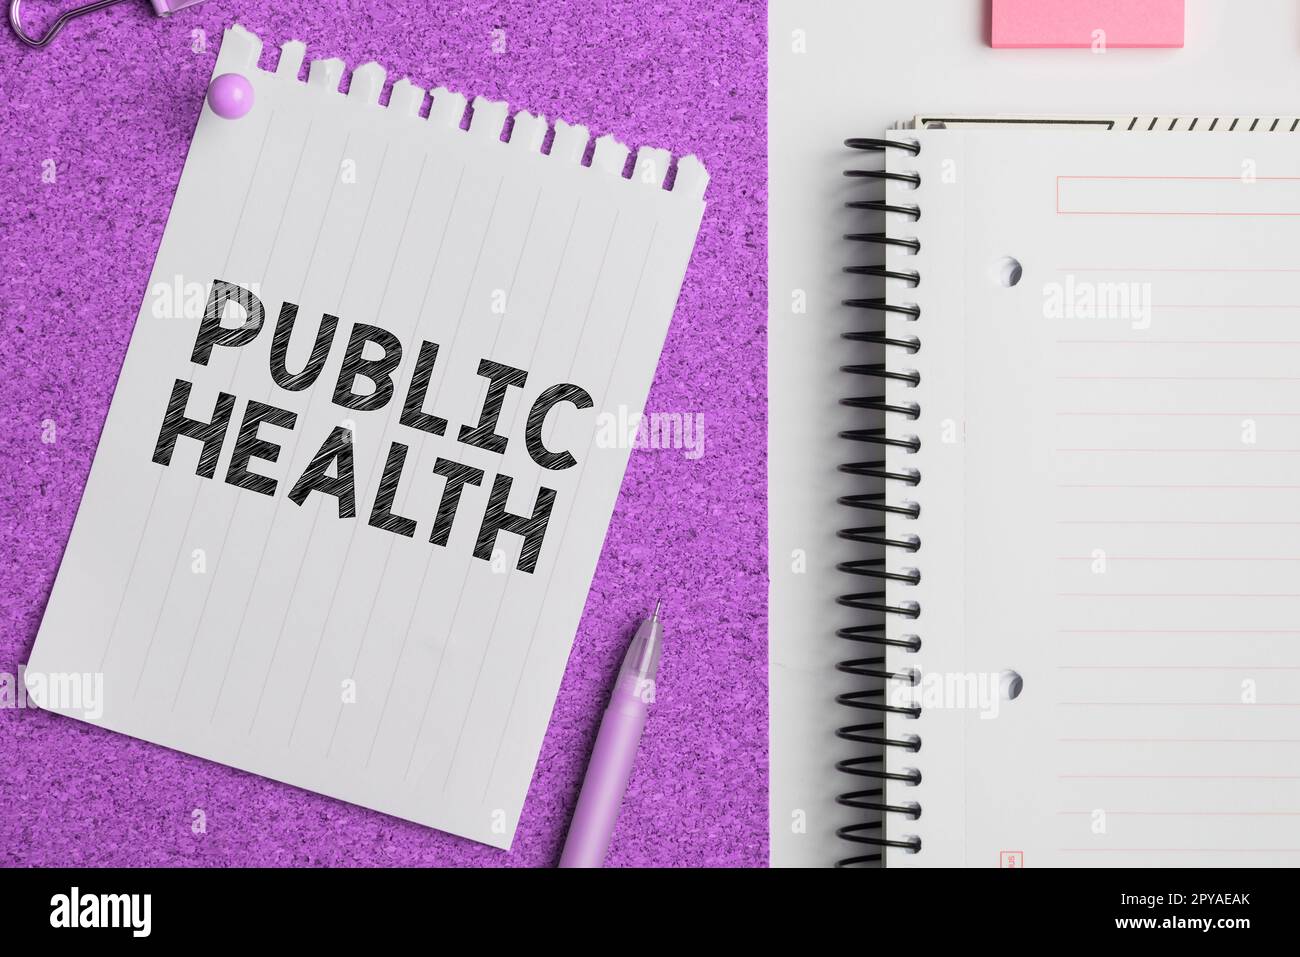 Text zeigt Inspiration Public Health. Unternehmerischer Ansatz zur Förderung einer gesunden Lebensweise für die Gemeinschaft und ihre Menschen Stockfoto